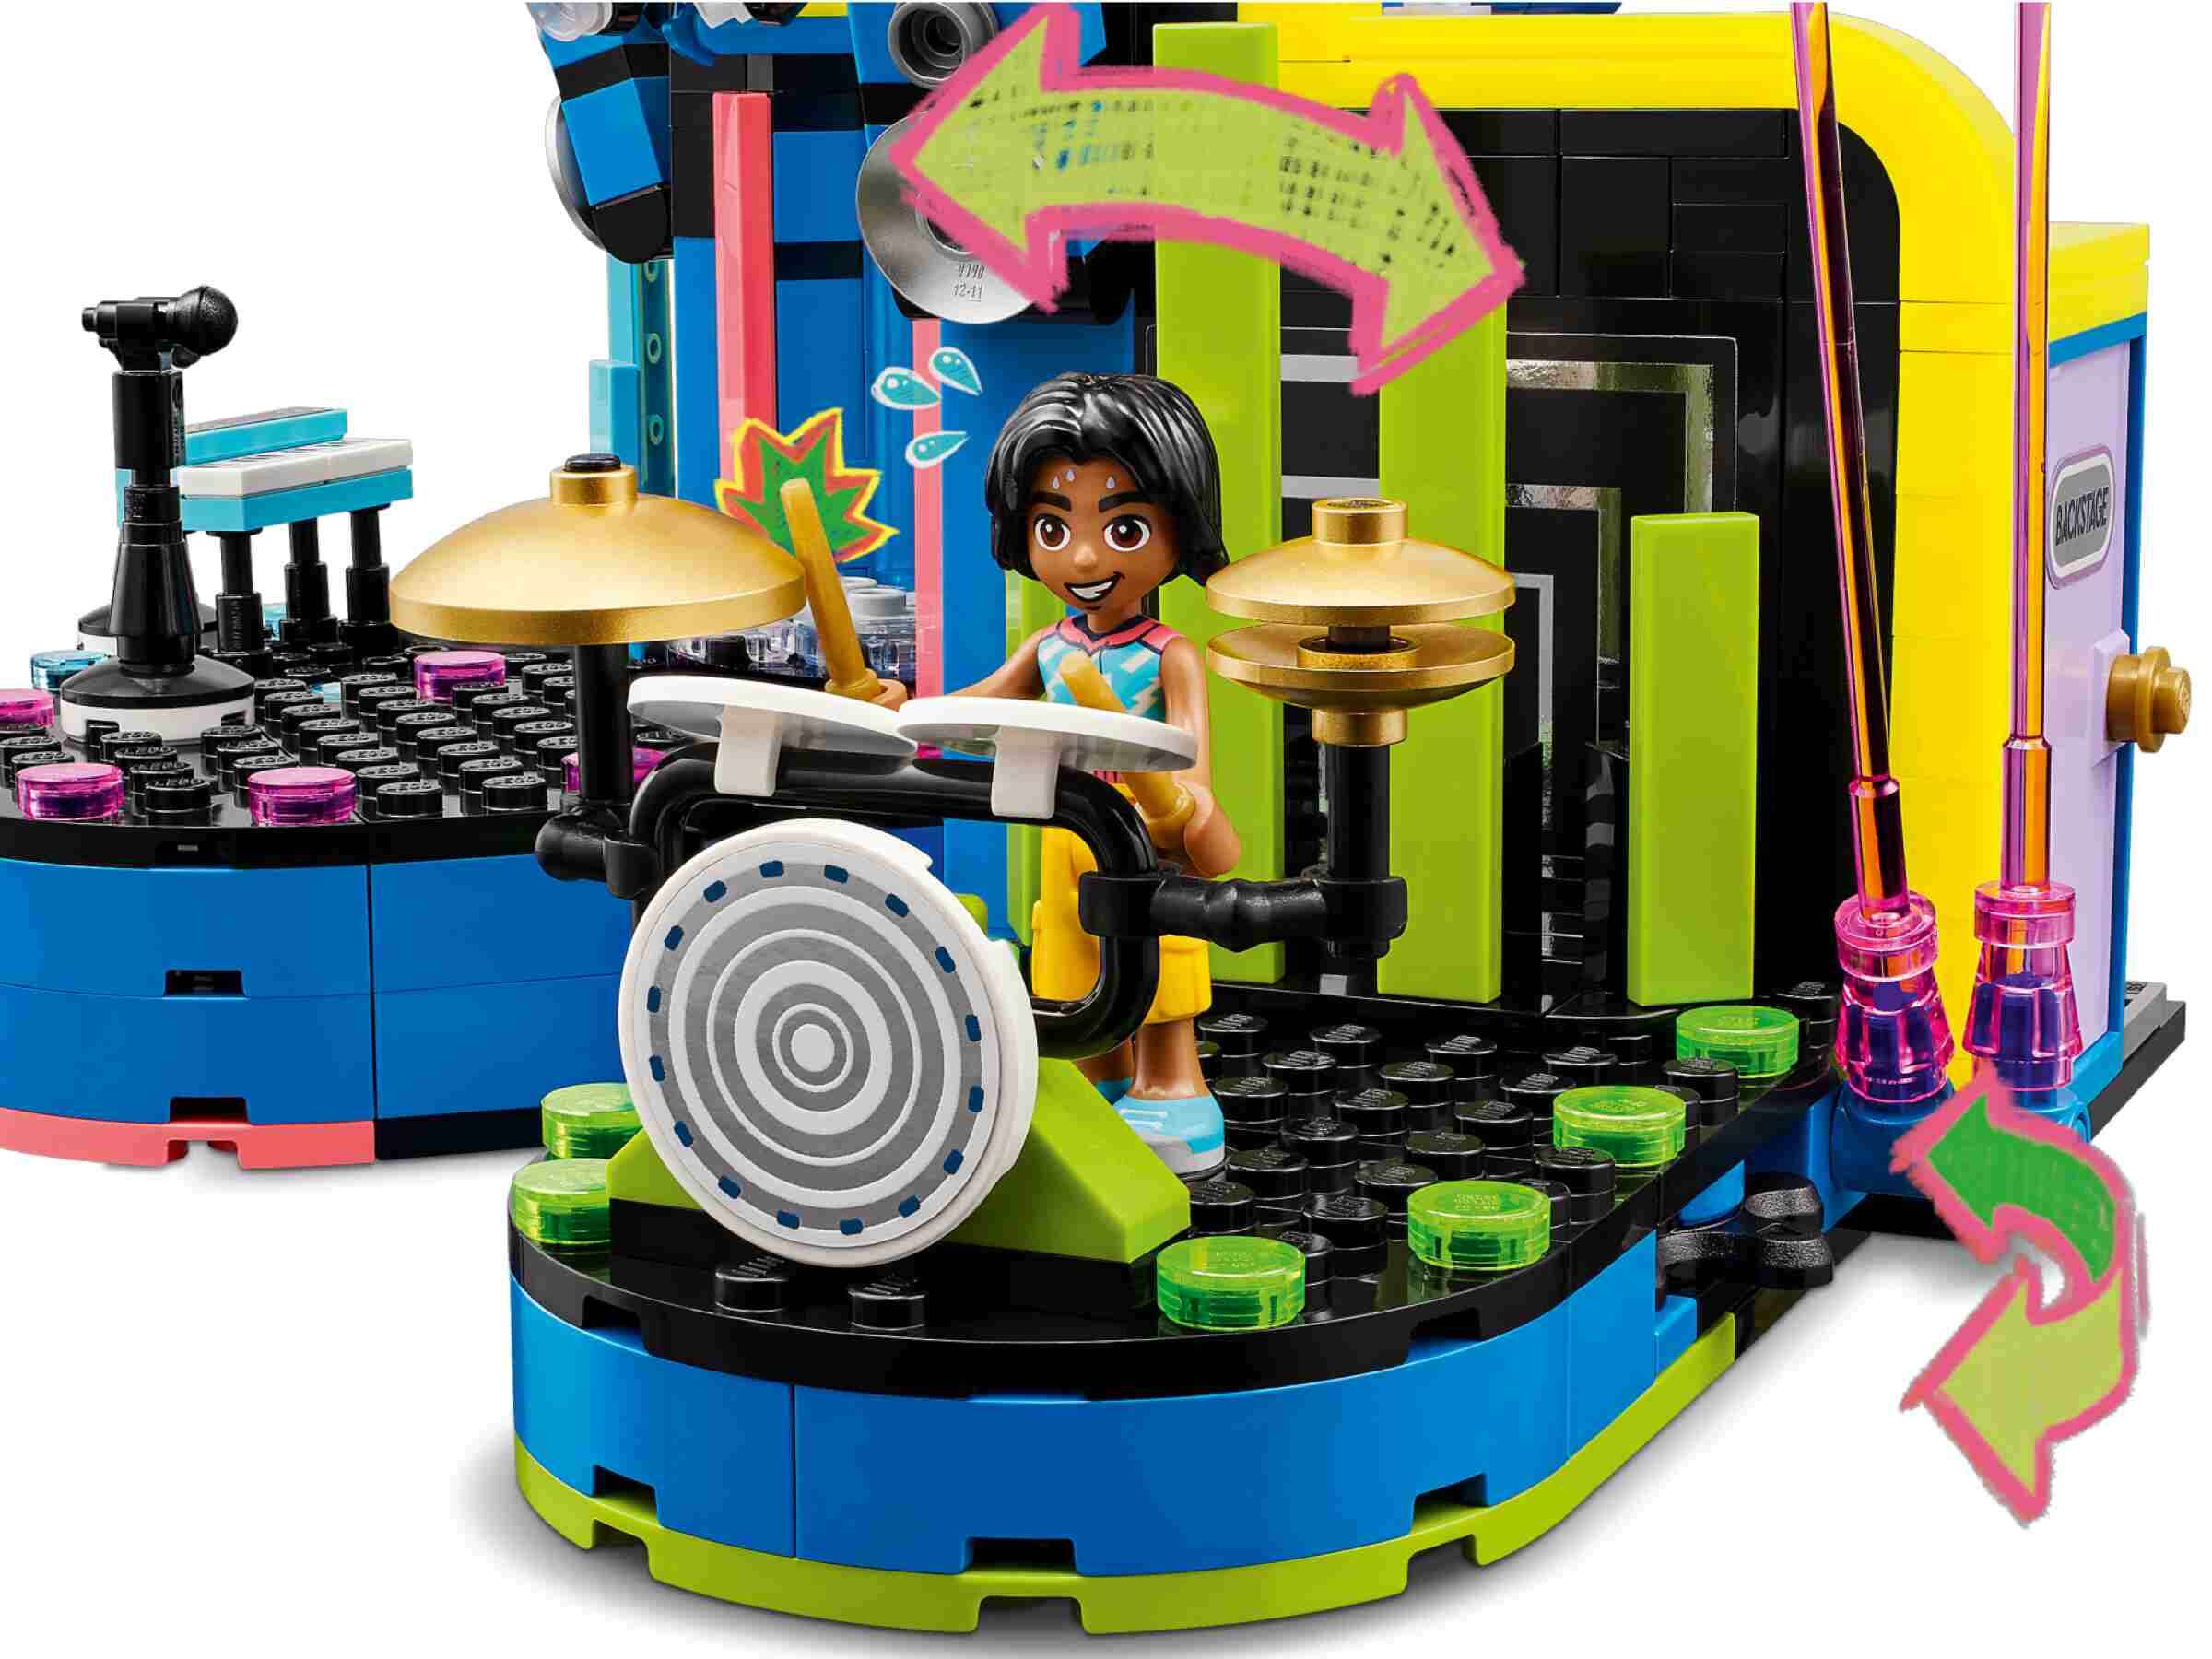 LEGO 42616 Friends Talentshow in Heartlake City, 4 Spielfiguren, Bühne